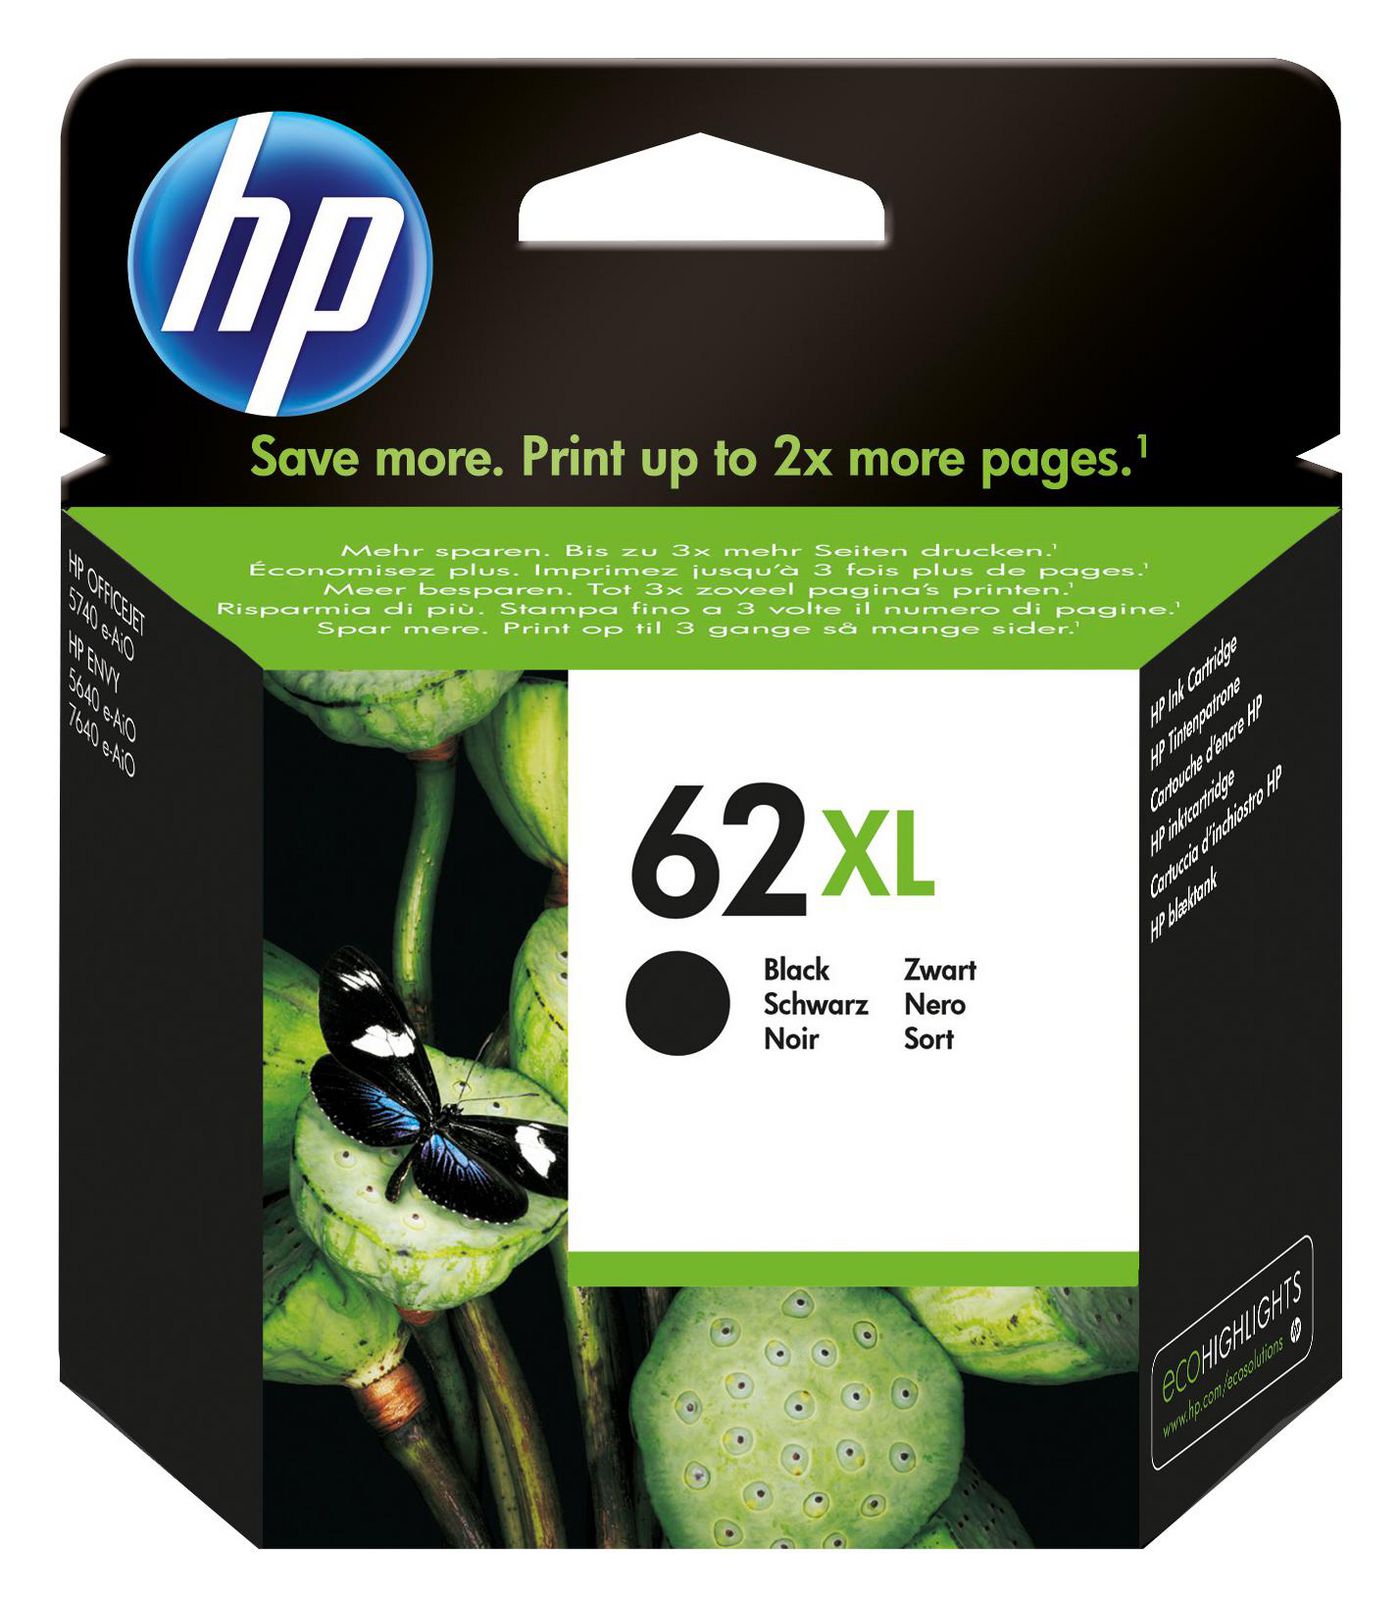 HP Ink/62XL Black Cartridge